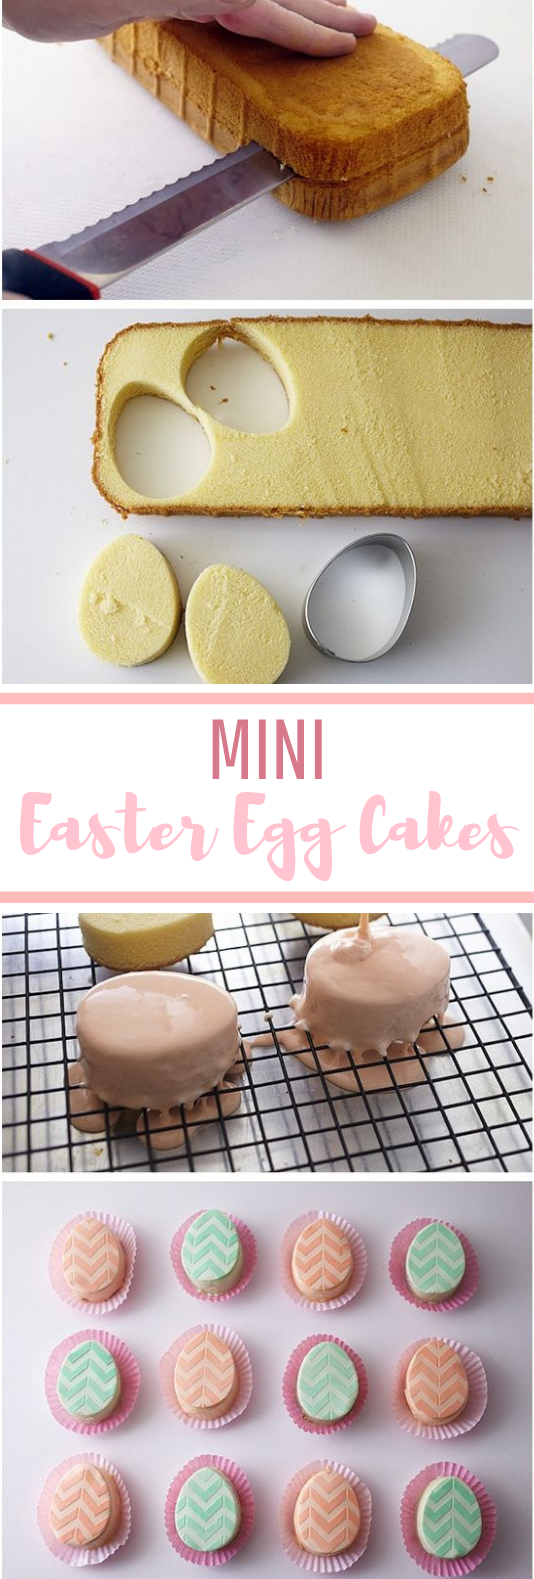 Mini Easter Egg Cakes #dessert #cake